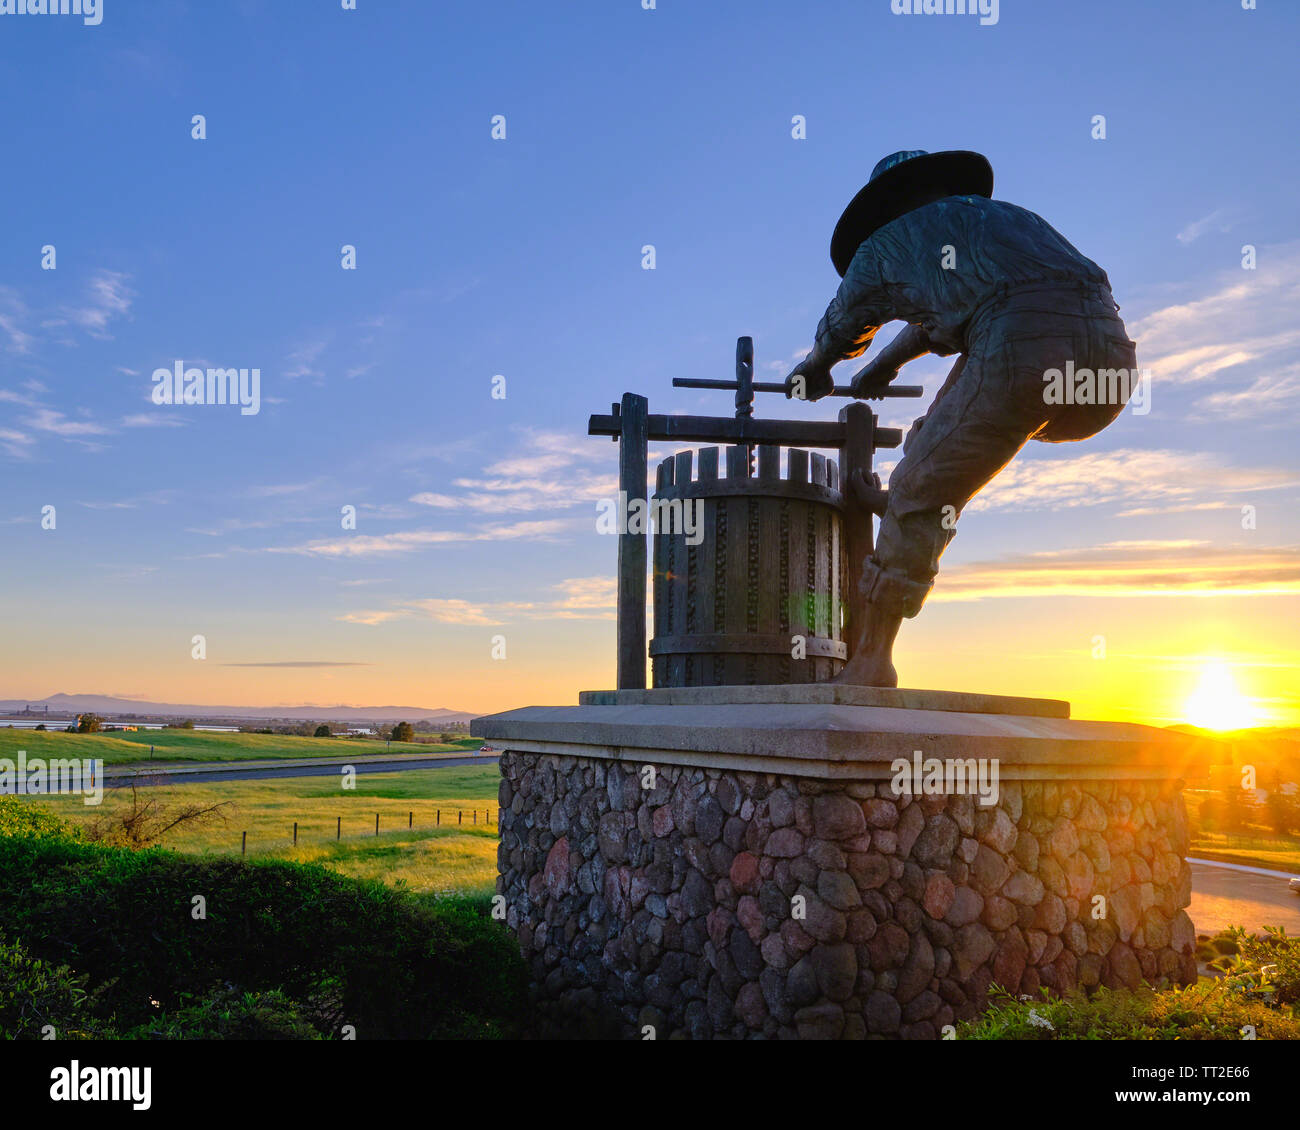 Le concasseur de raisin statue au coucher du soleil, Napa Valley, Californie Banque D'Images